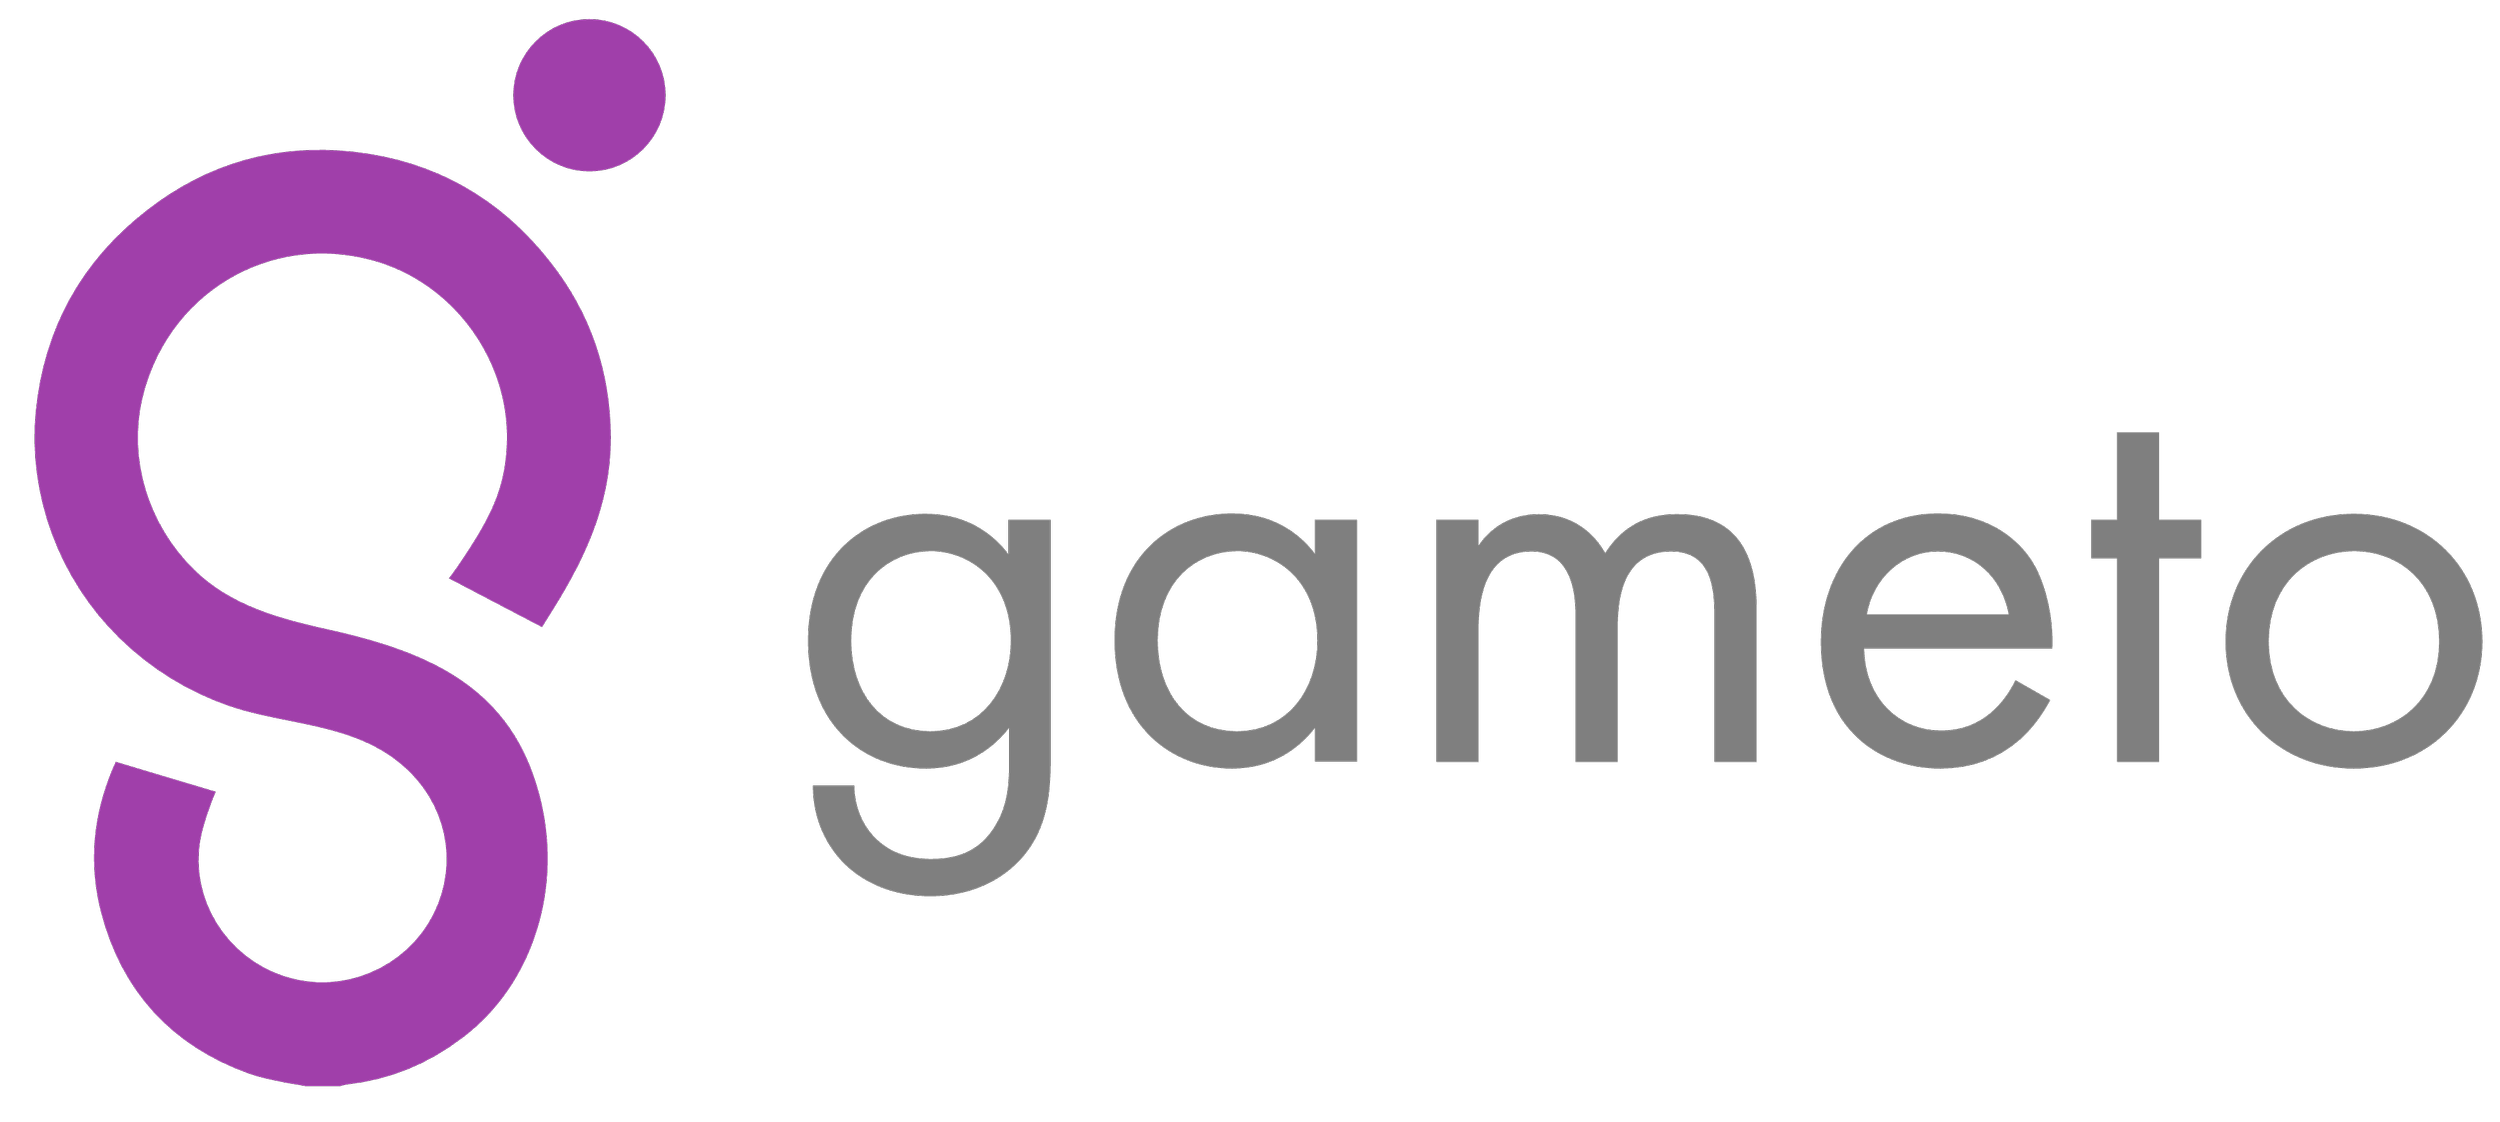 Gameto logo.png